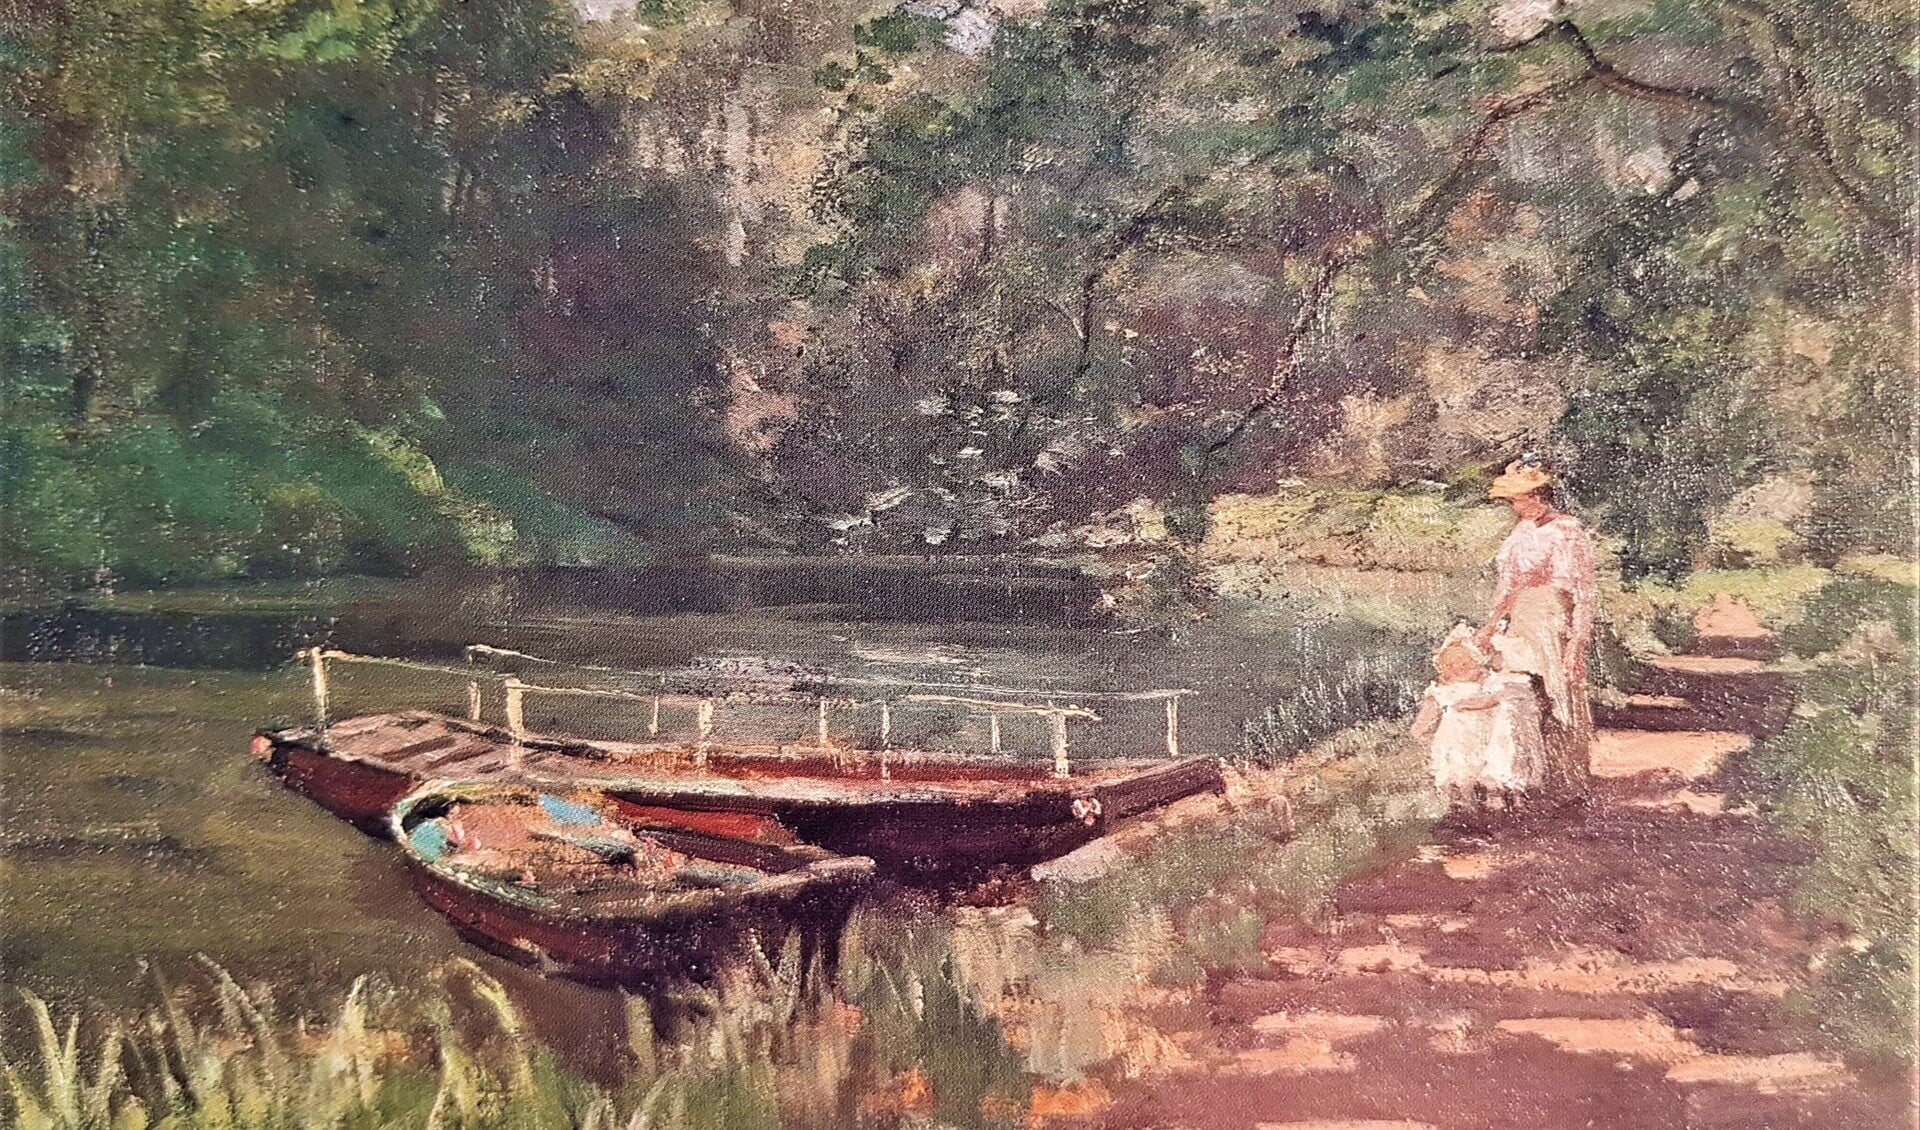 Een Zocherbootje, vernoemd naar landschapsarchitect J.D. Zocher jr.. Titel: Wandeling langs de Vliet, schilder: J.A. De Jonge, circa 1895.